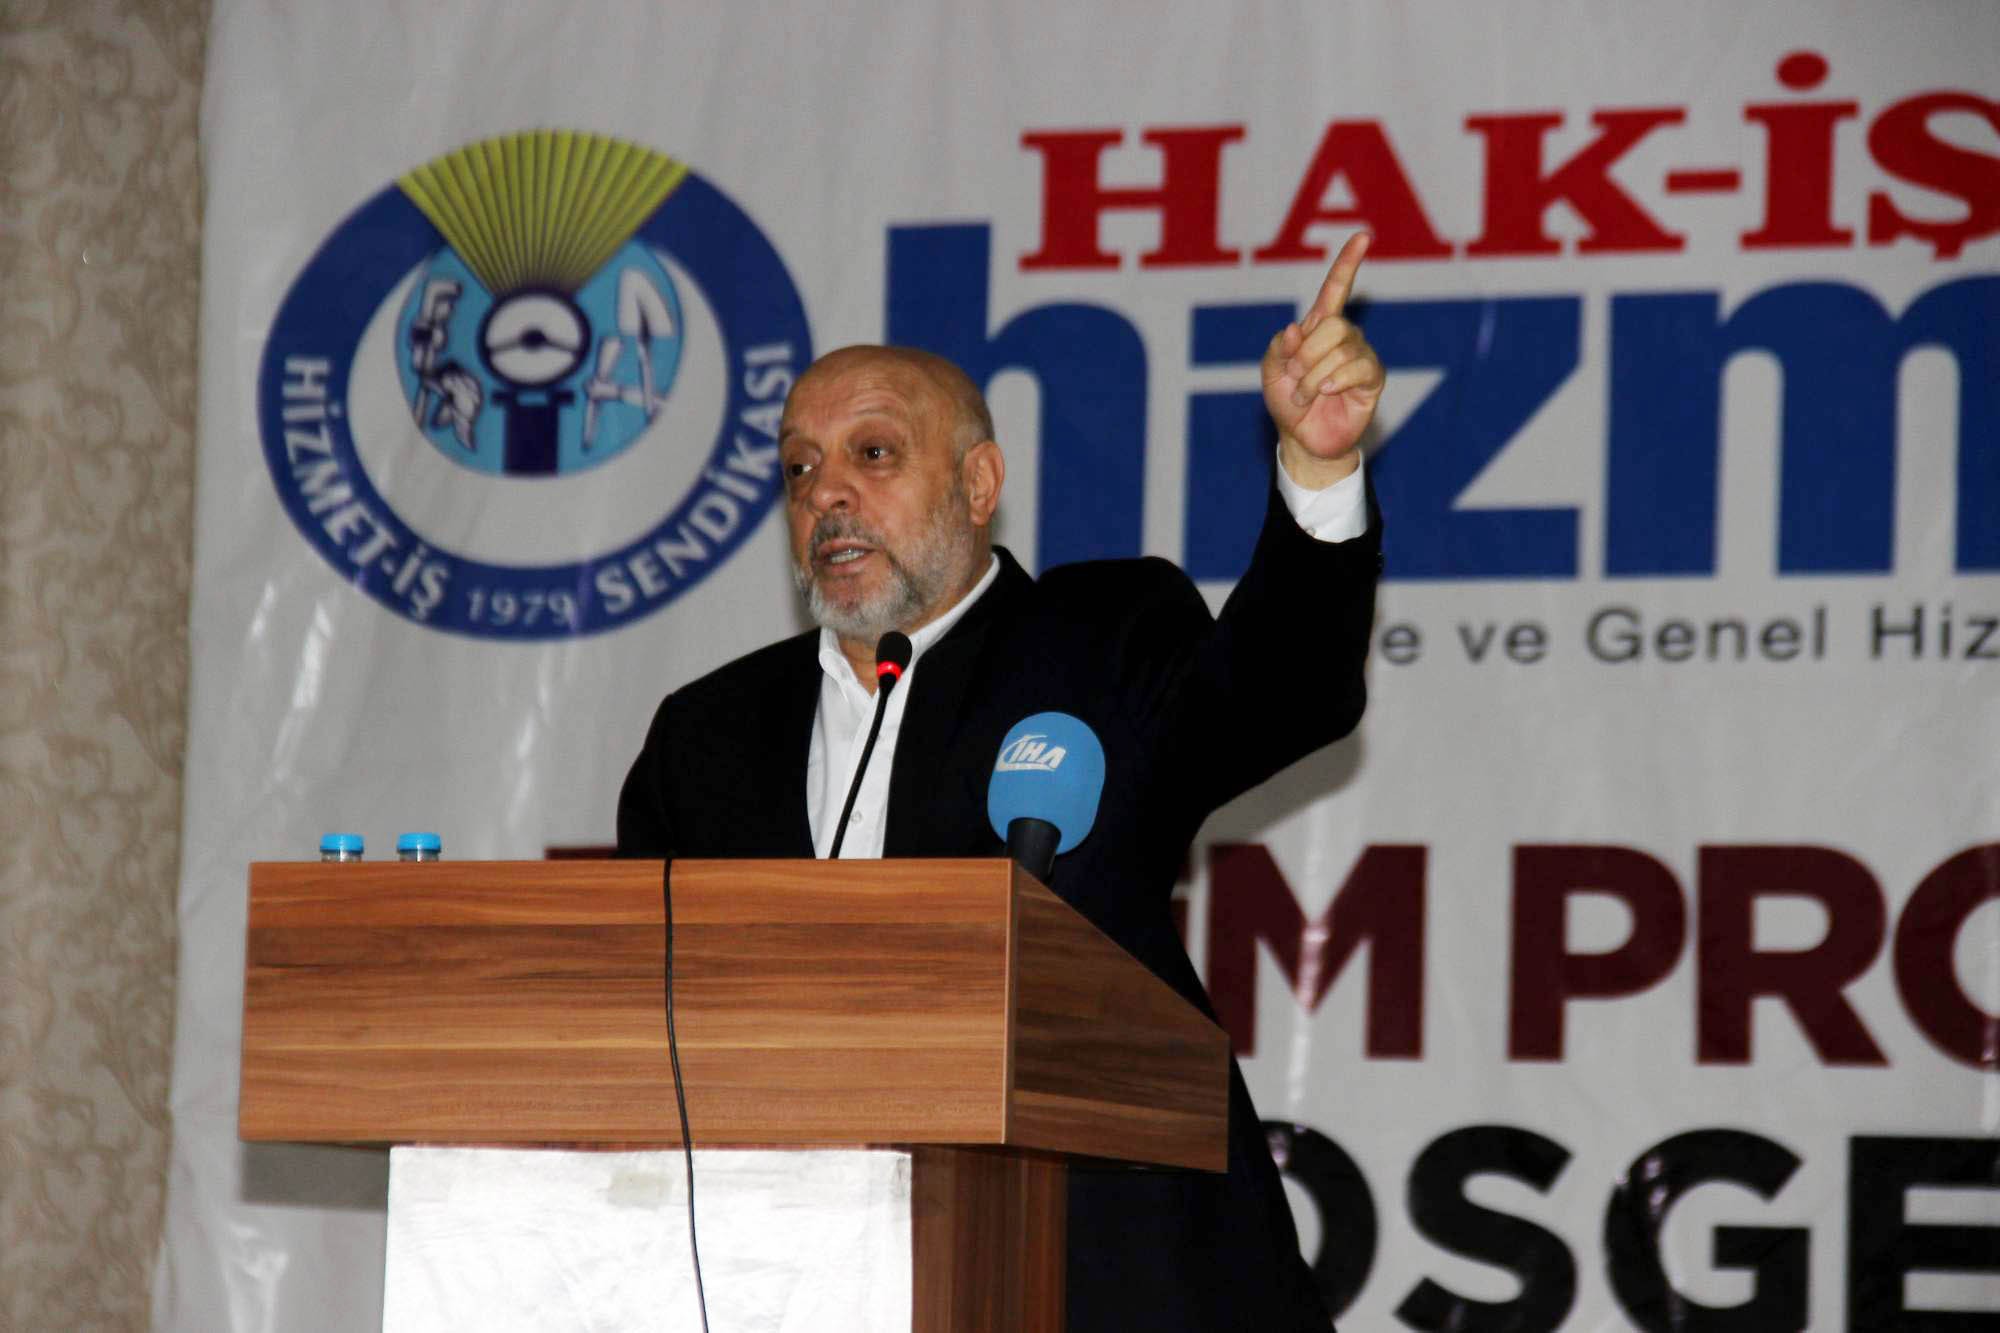 HAK-İŞ Konfederasyonu Başkanı Arslan: “Taşeron mücadelemiz başarıya ulaştı”